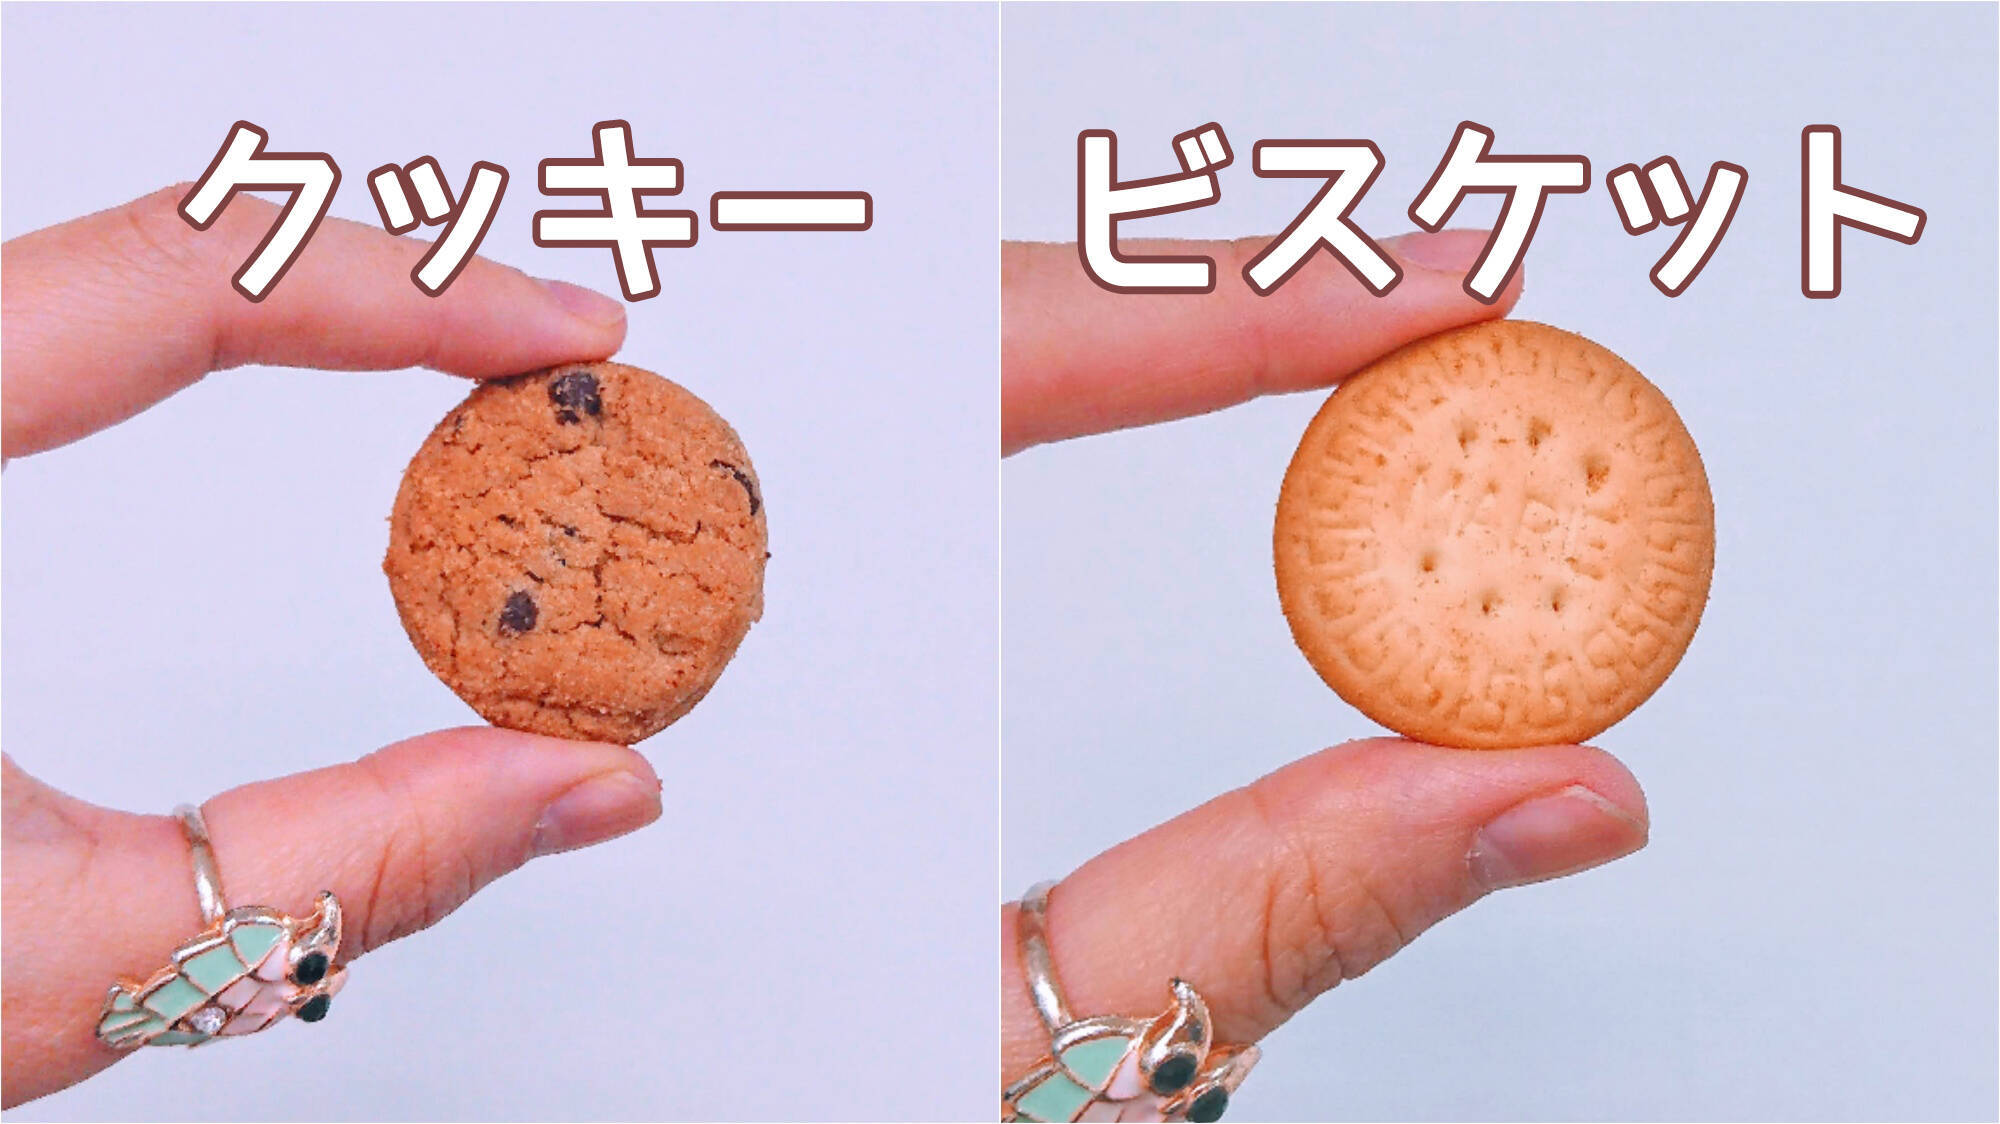 素朴な疑問 クッキーとビスケットの違いって何 調べてみたら日本と海外で違う食べ物になることも 19年3月10日 エキサイトニュース